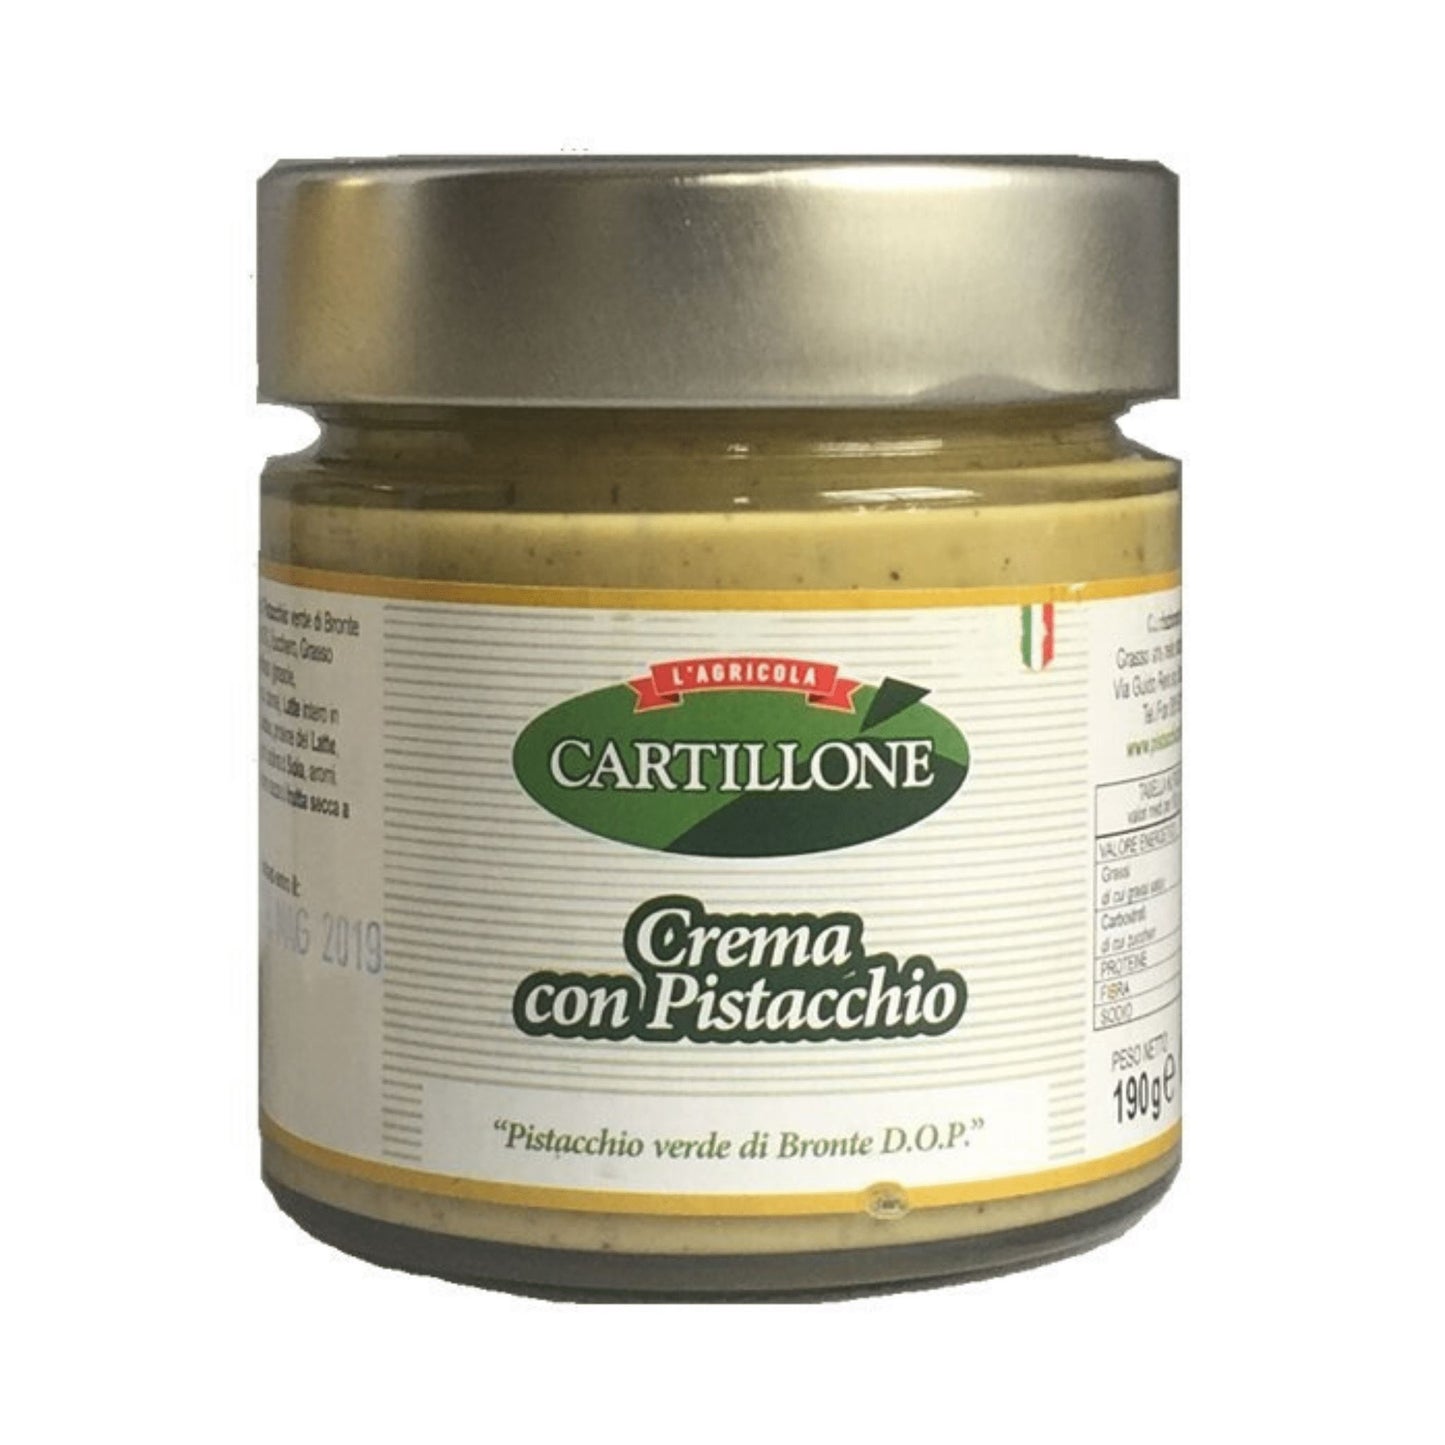 Crema di Pistacchi di Bronte DOP, 190 gr Confetture e Creme spalmabili Azienda agricola Cartillone 